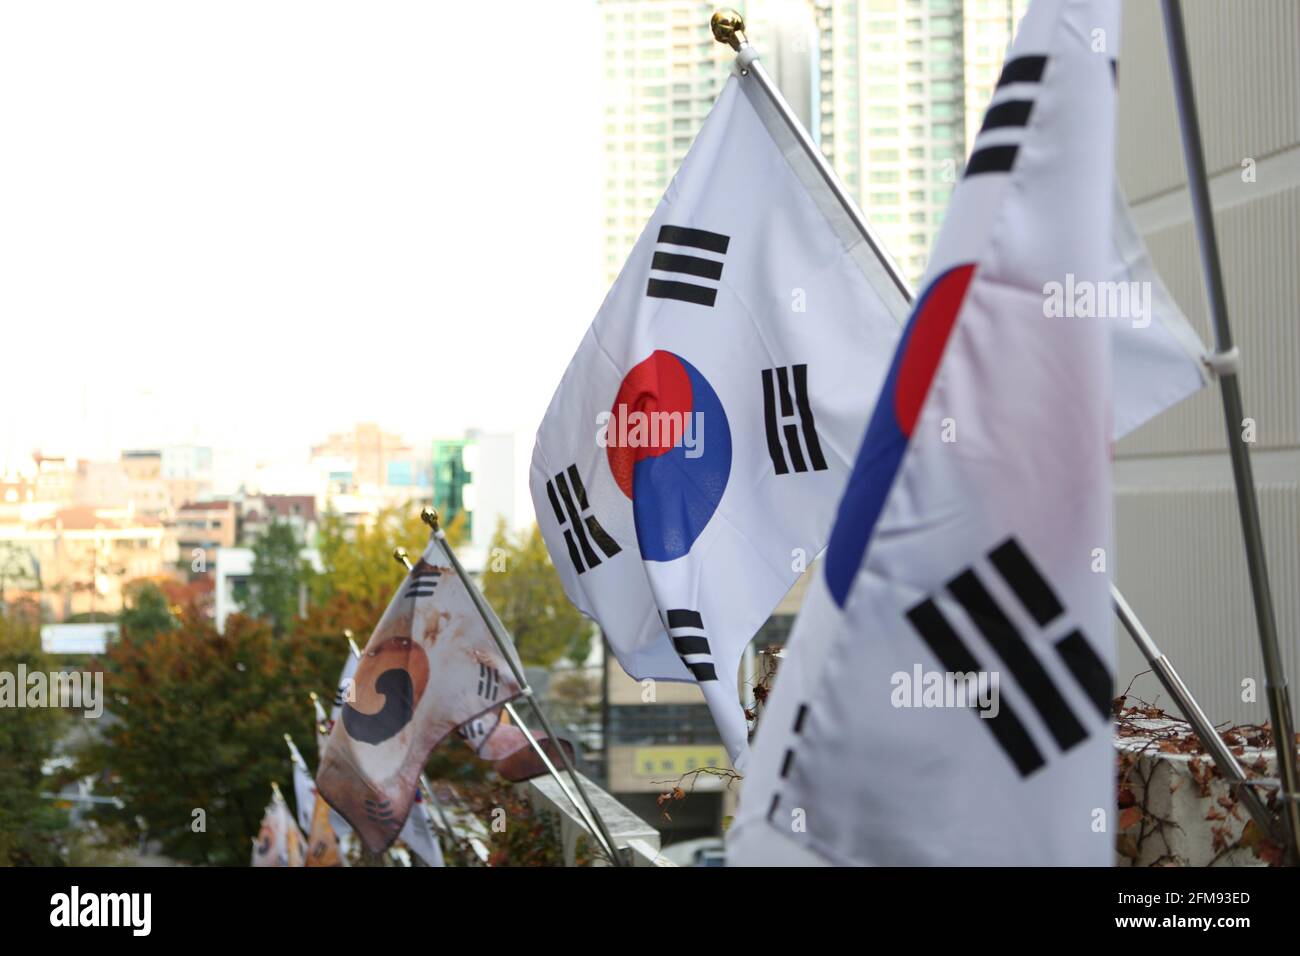 Des drapeaux coréens sont suspendus dans la fenêtre de l'appartement Banque D'Images